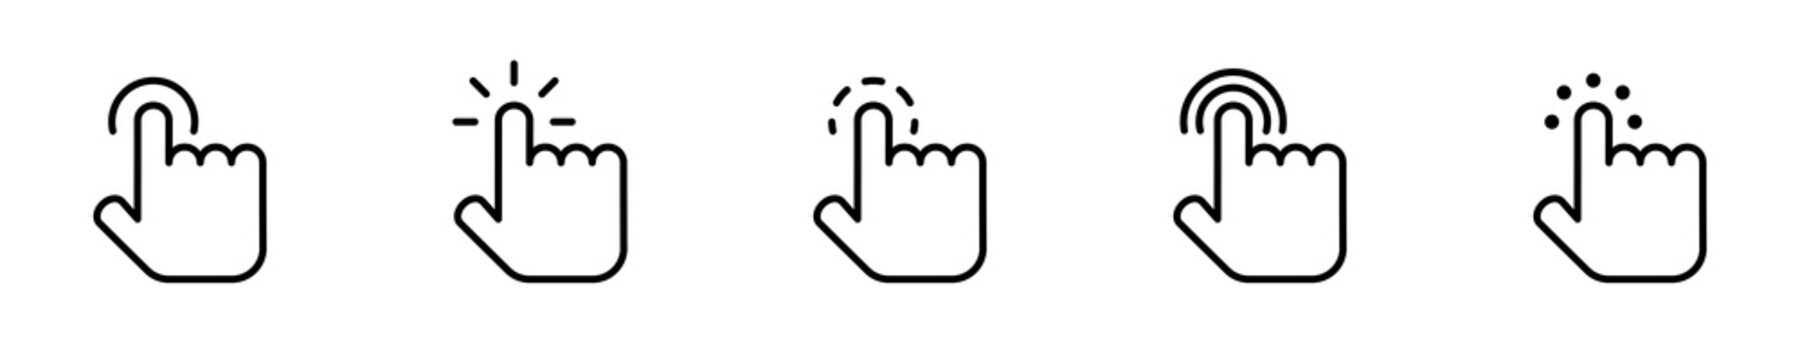 Conjunto de iconos de clics táctil del cursor. Pantalla táctil del dedo. Señalando clics con la mano. ilustración vectorial